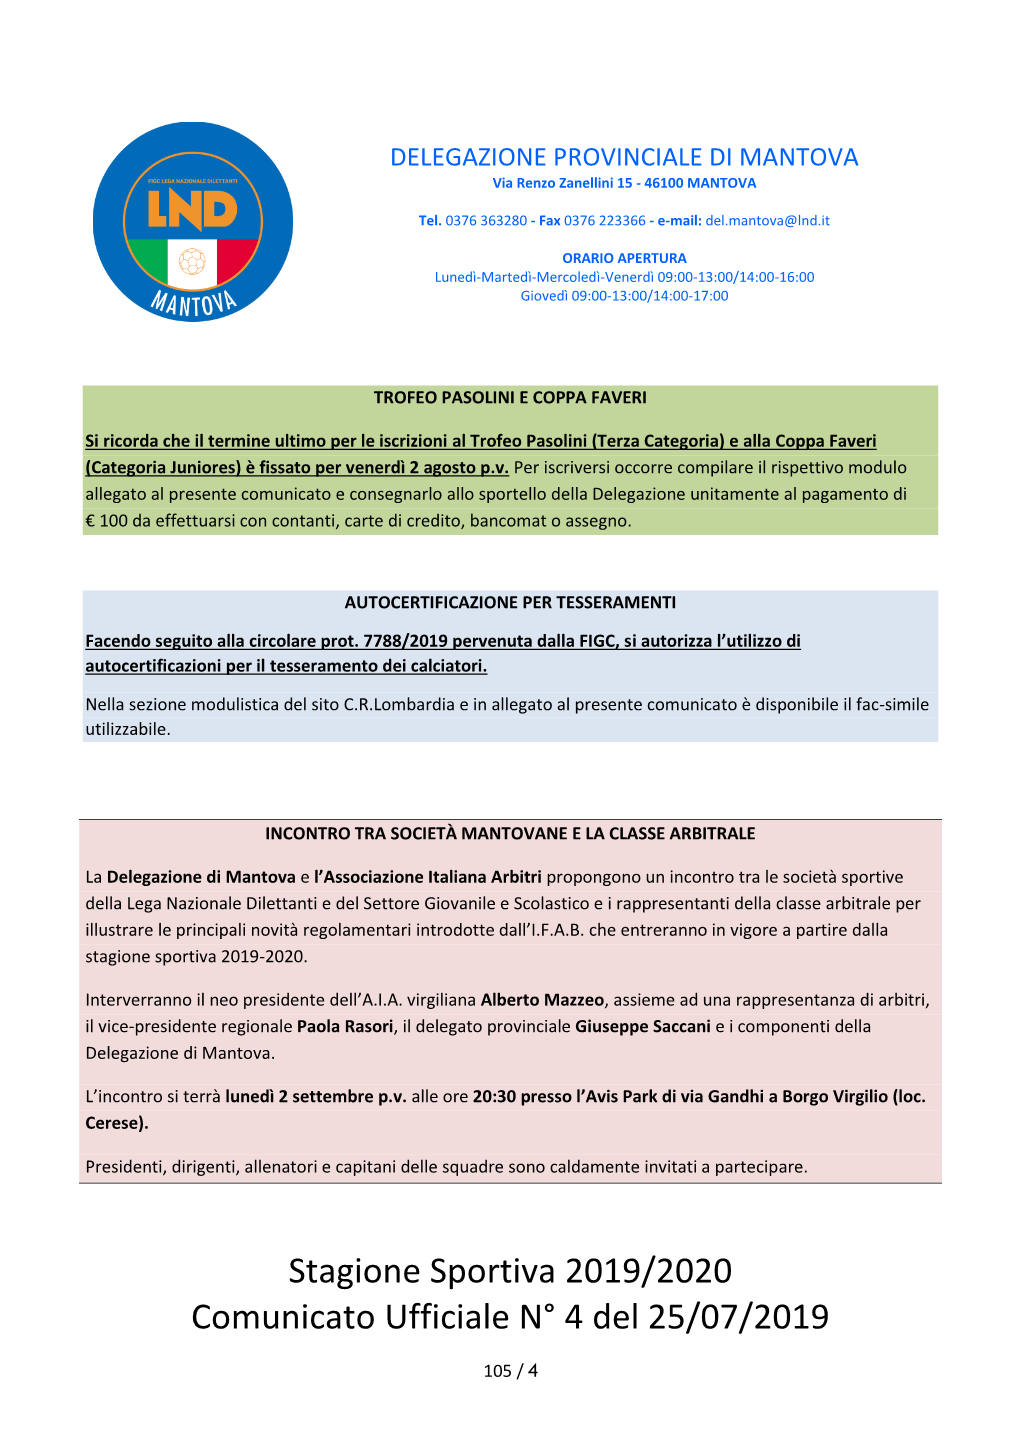 Stagione Sportiva 2019/2020 Comunicato Ufficiale N° 4 Del 25/07/2019